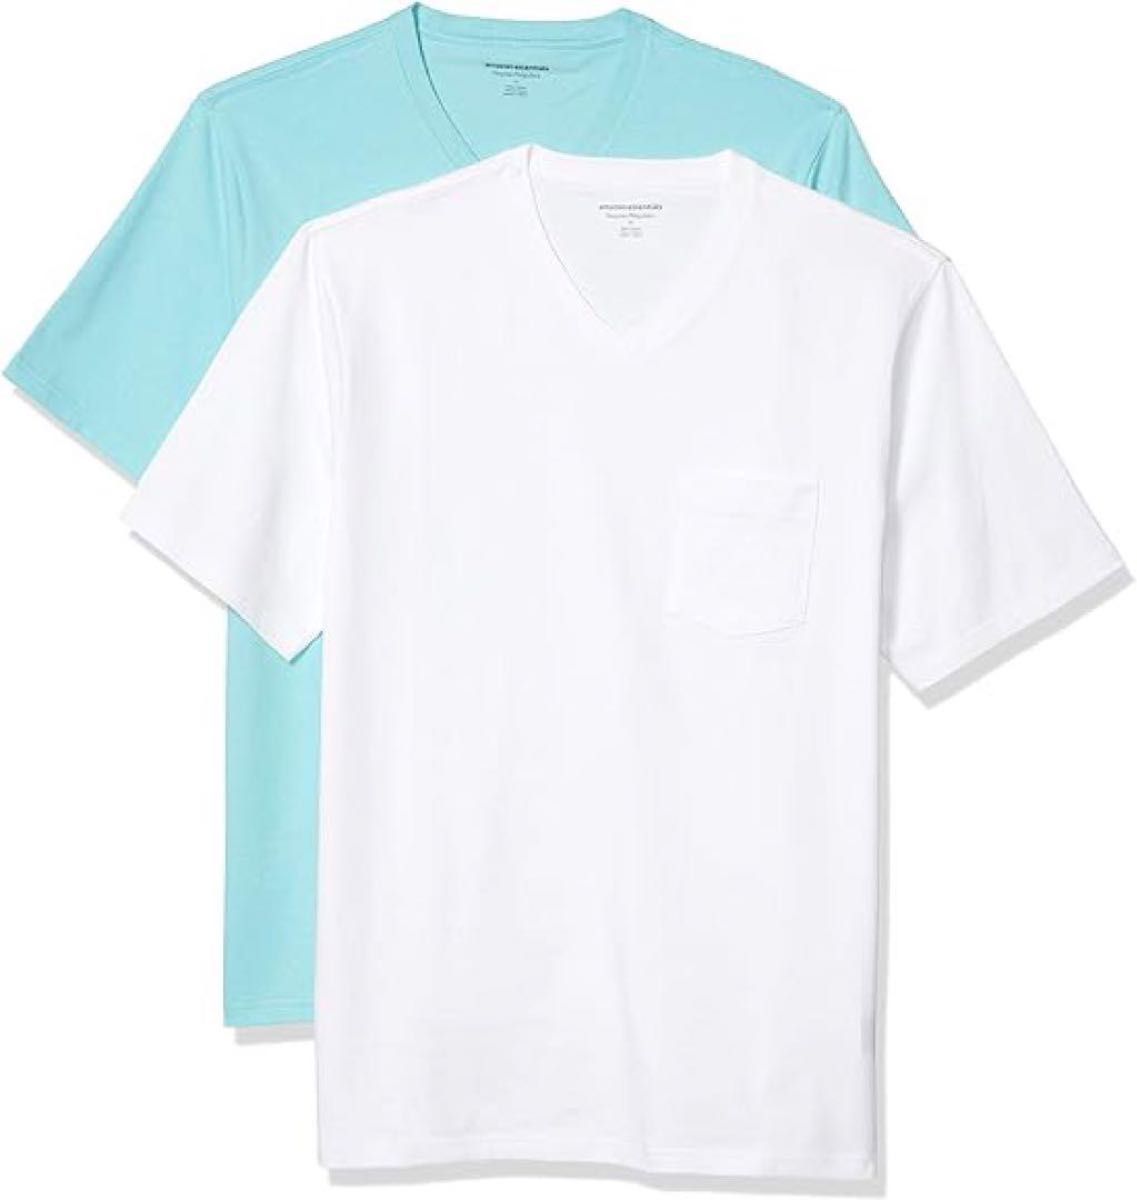 2枚組 Tシャツ ポケット付き Vネック 半袖 夏 セット 無地 白 水色 XS